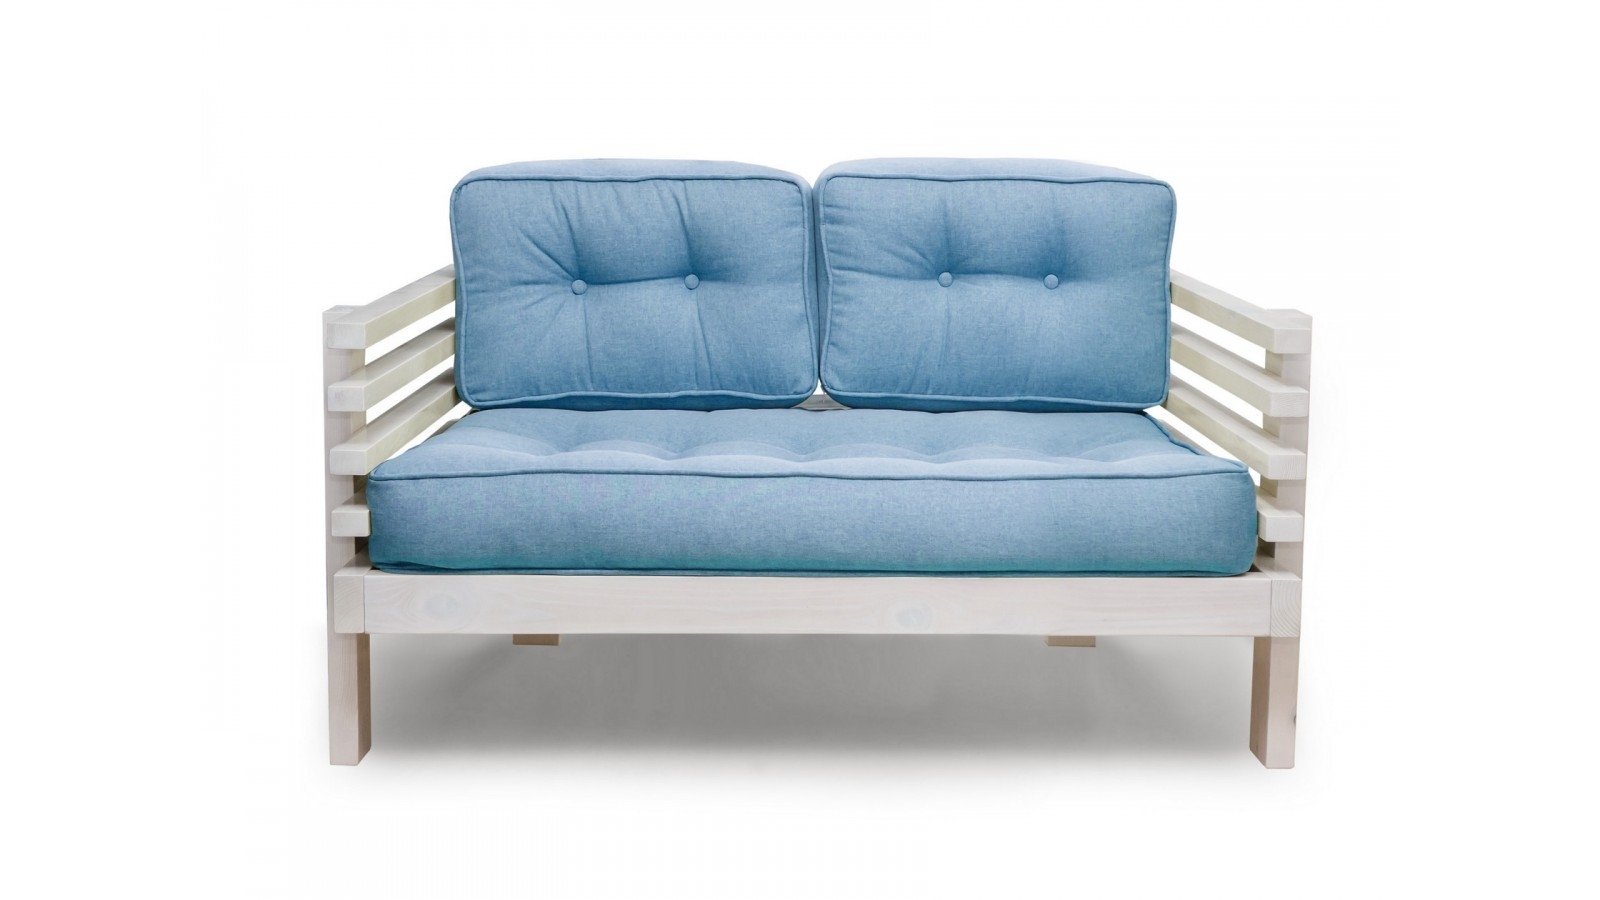 Купить диван в стиле лофт из дерева